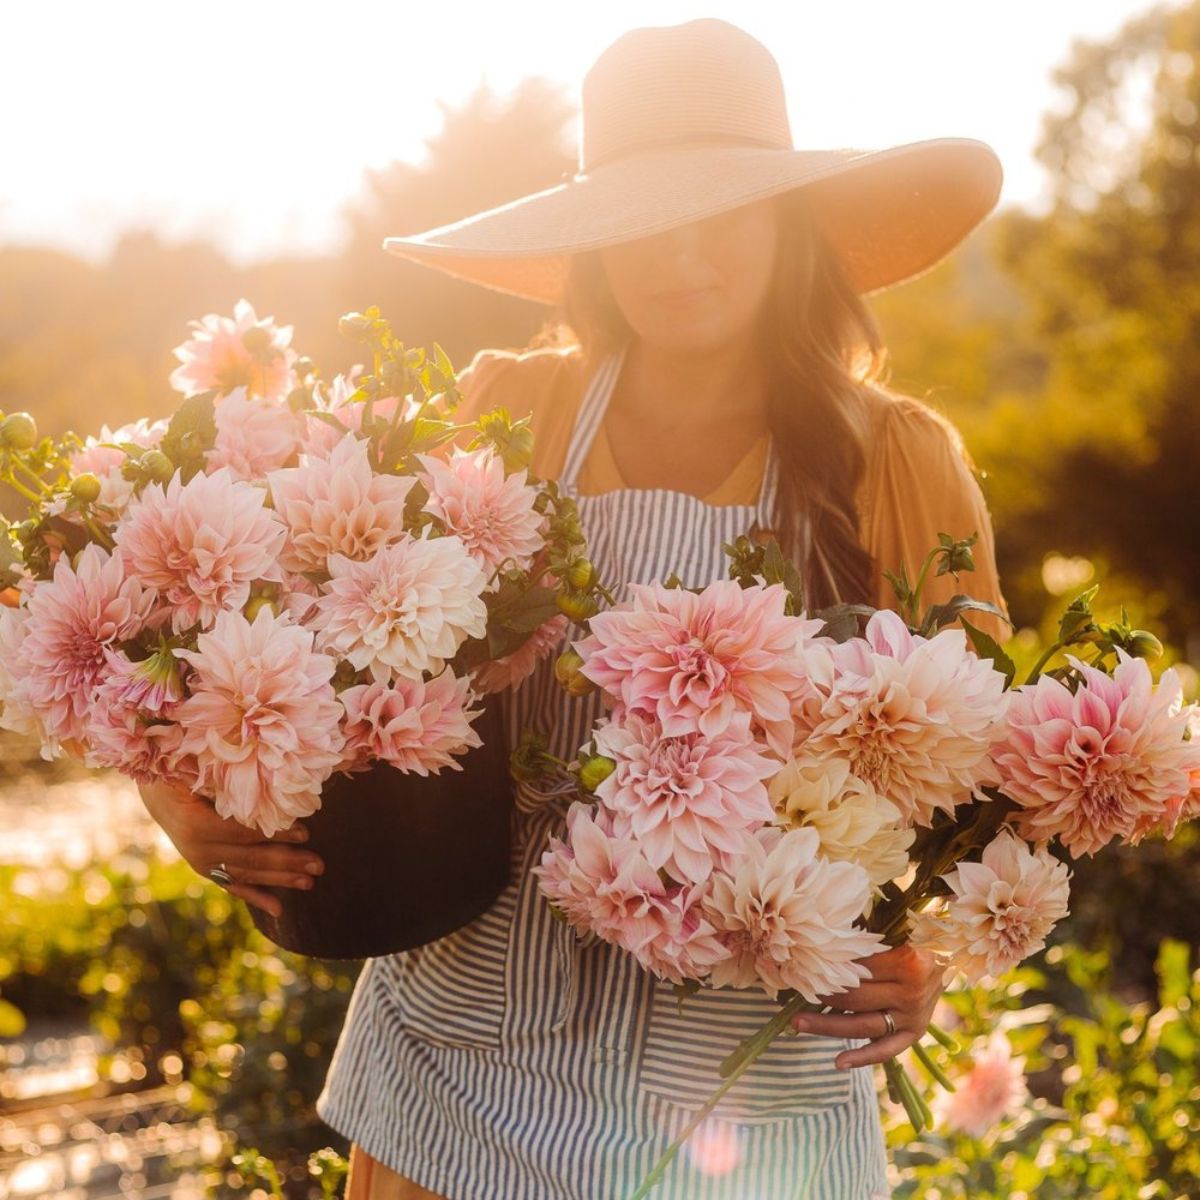 flower garden Instagram accounts - Flourish Flower Farm